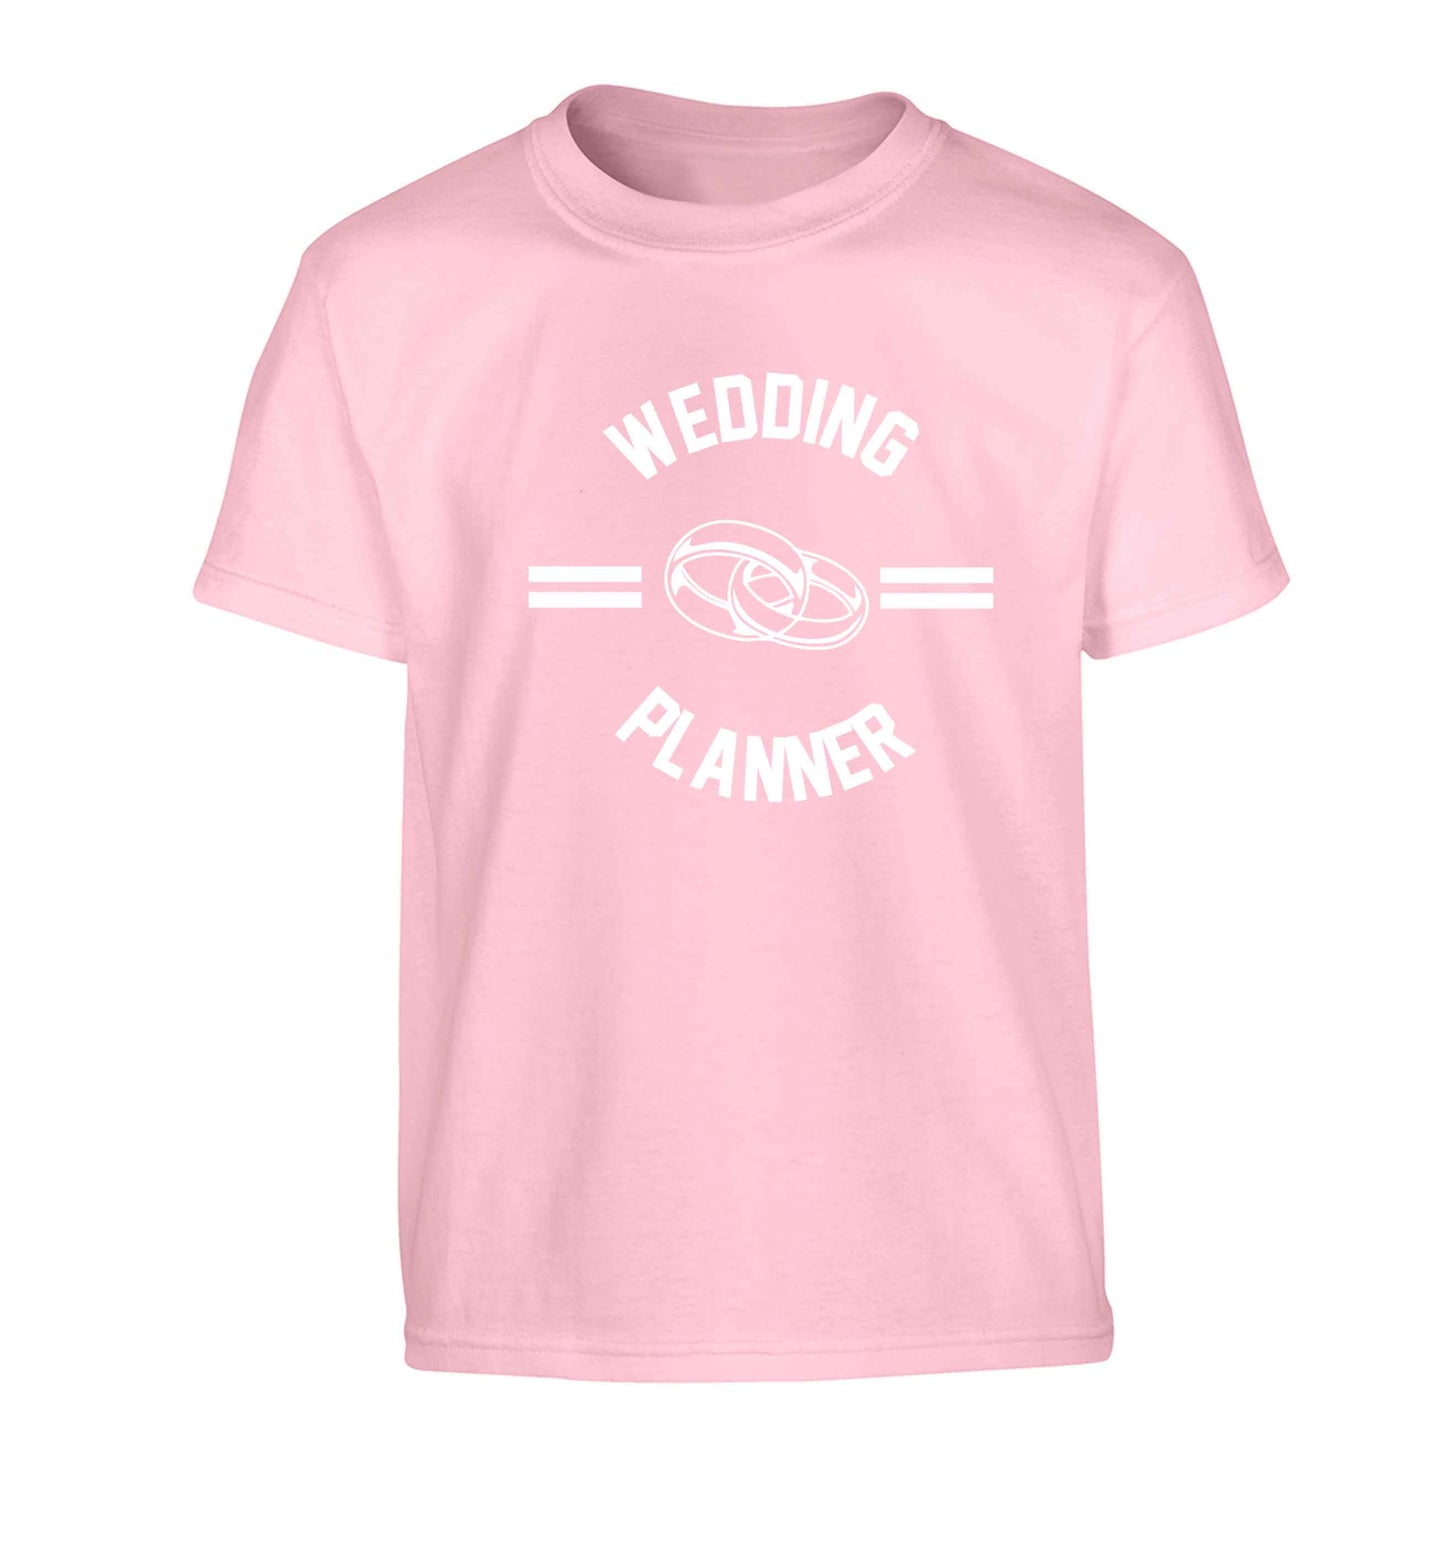 Wedding planner Children's light pink Tshirt 12-13 Years